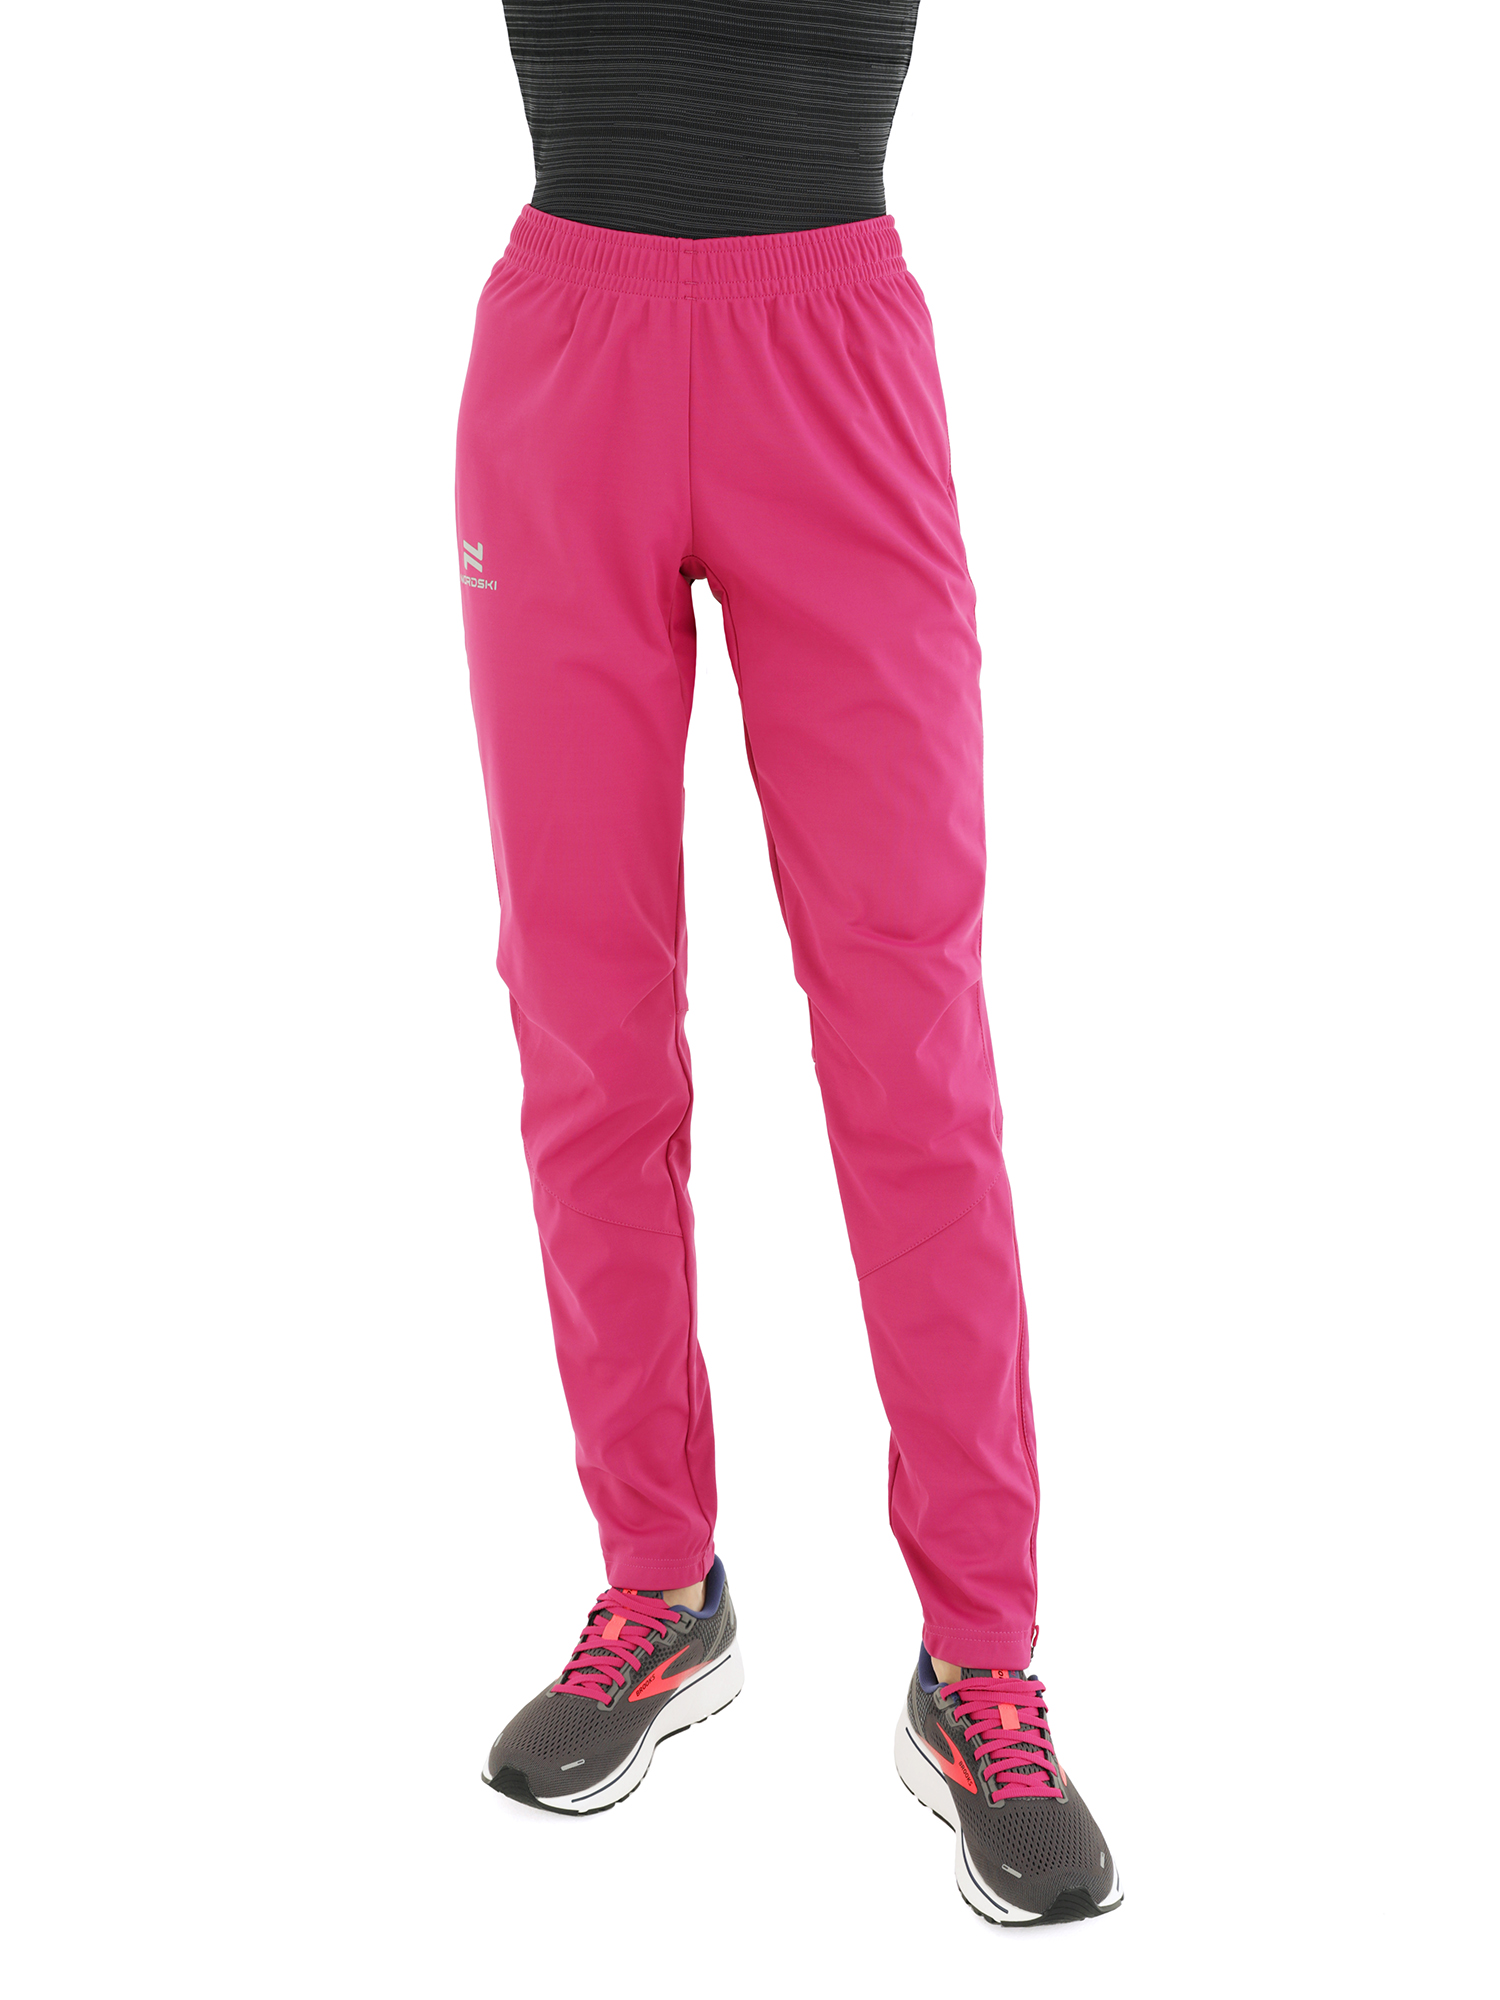 Спортивные брюки женские NordSki Nsw522328 фиолетовые M